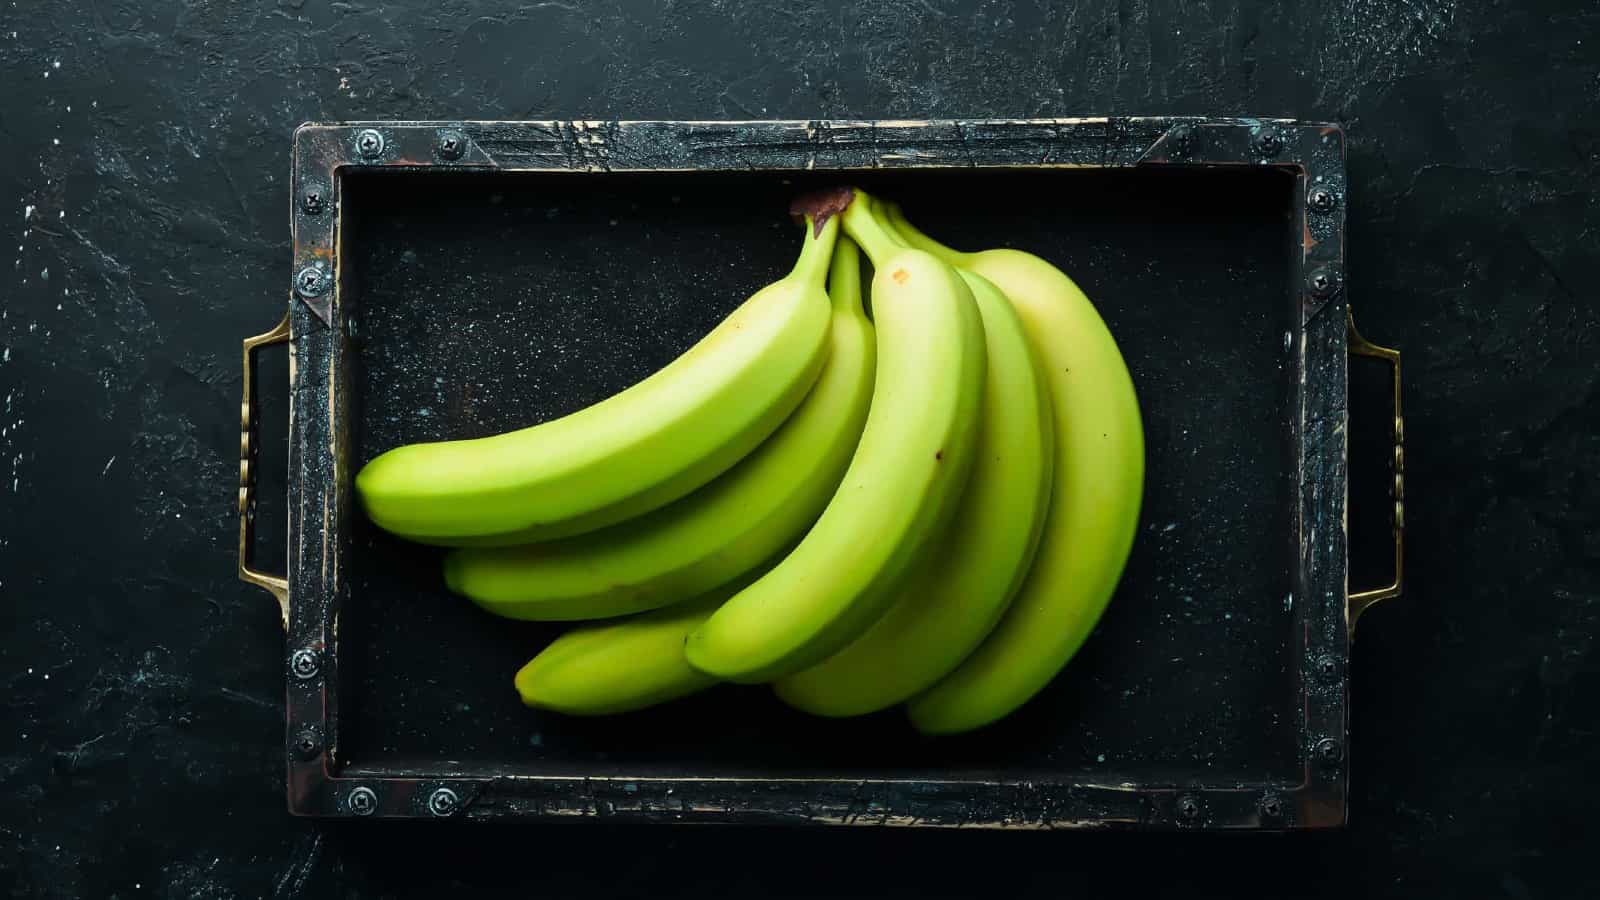 Η κατανάλωση μιας ελαφρώς πράσινης μπανάνας καθημερινά μπορεί να μειώσει τον κίνδυνο καρκίνου